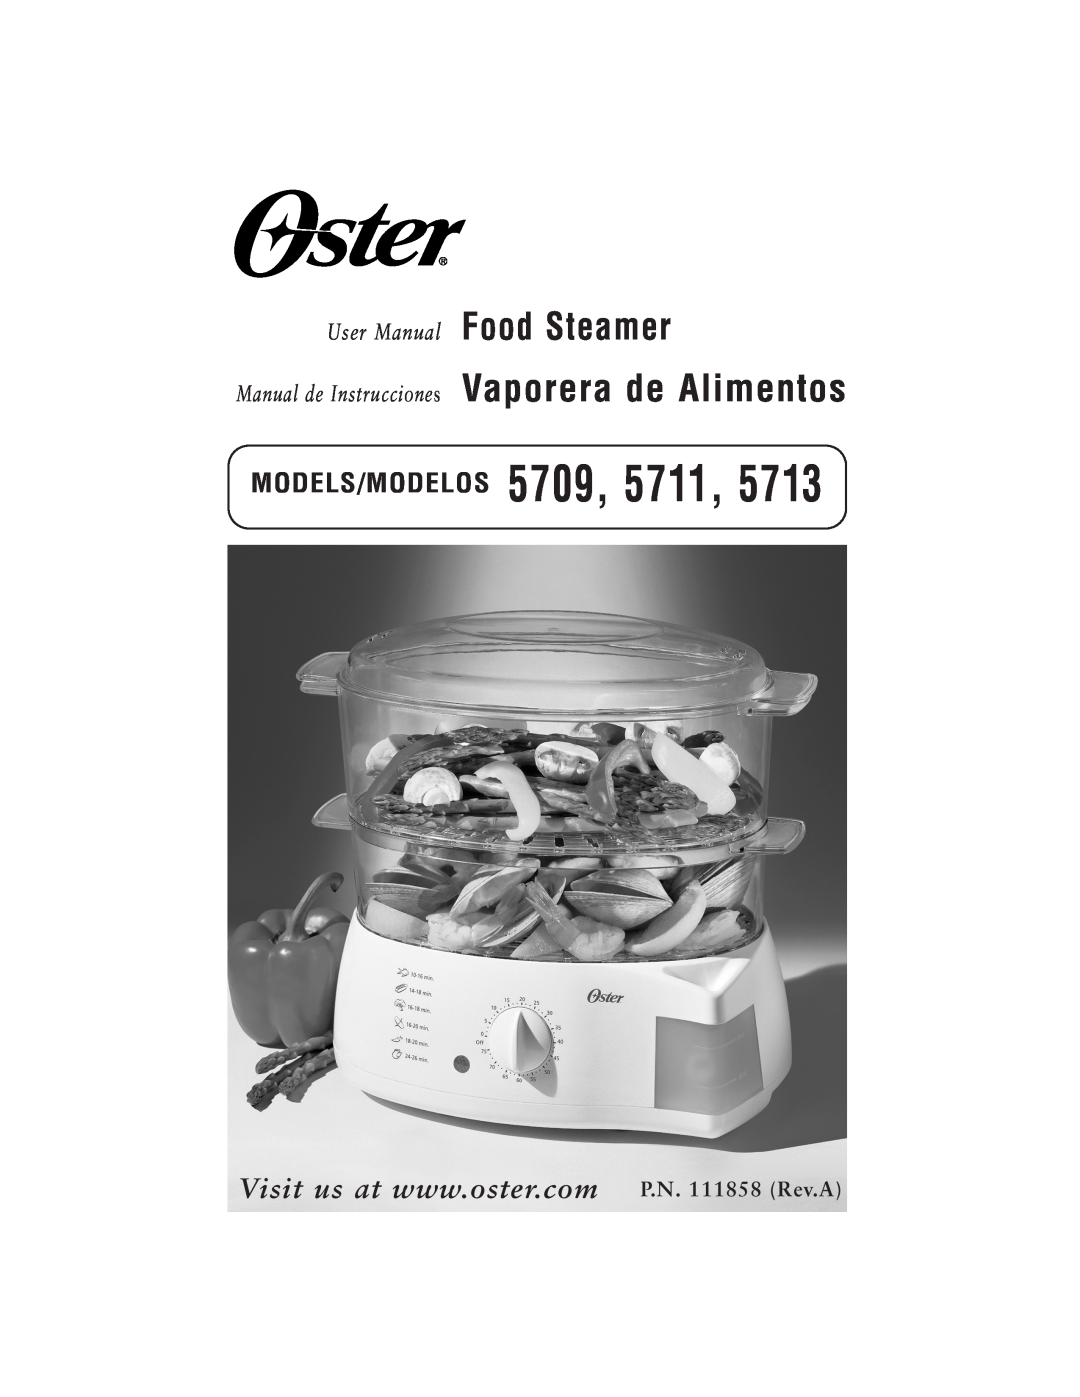 Oster 111858 user manual MODELS/MODELOS 5709, User Manual Food Steamer, Manual de Instrucciones Vaporera de Alimentos 